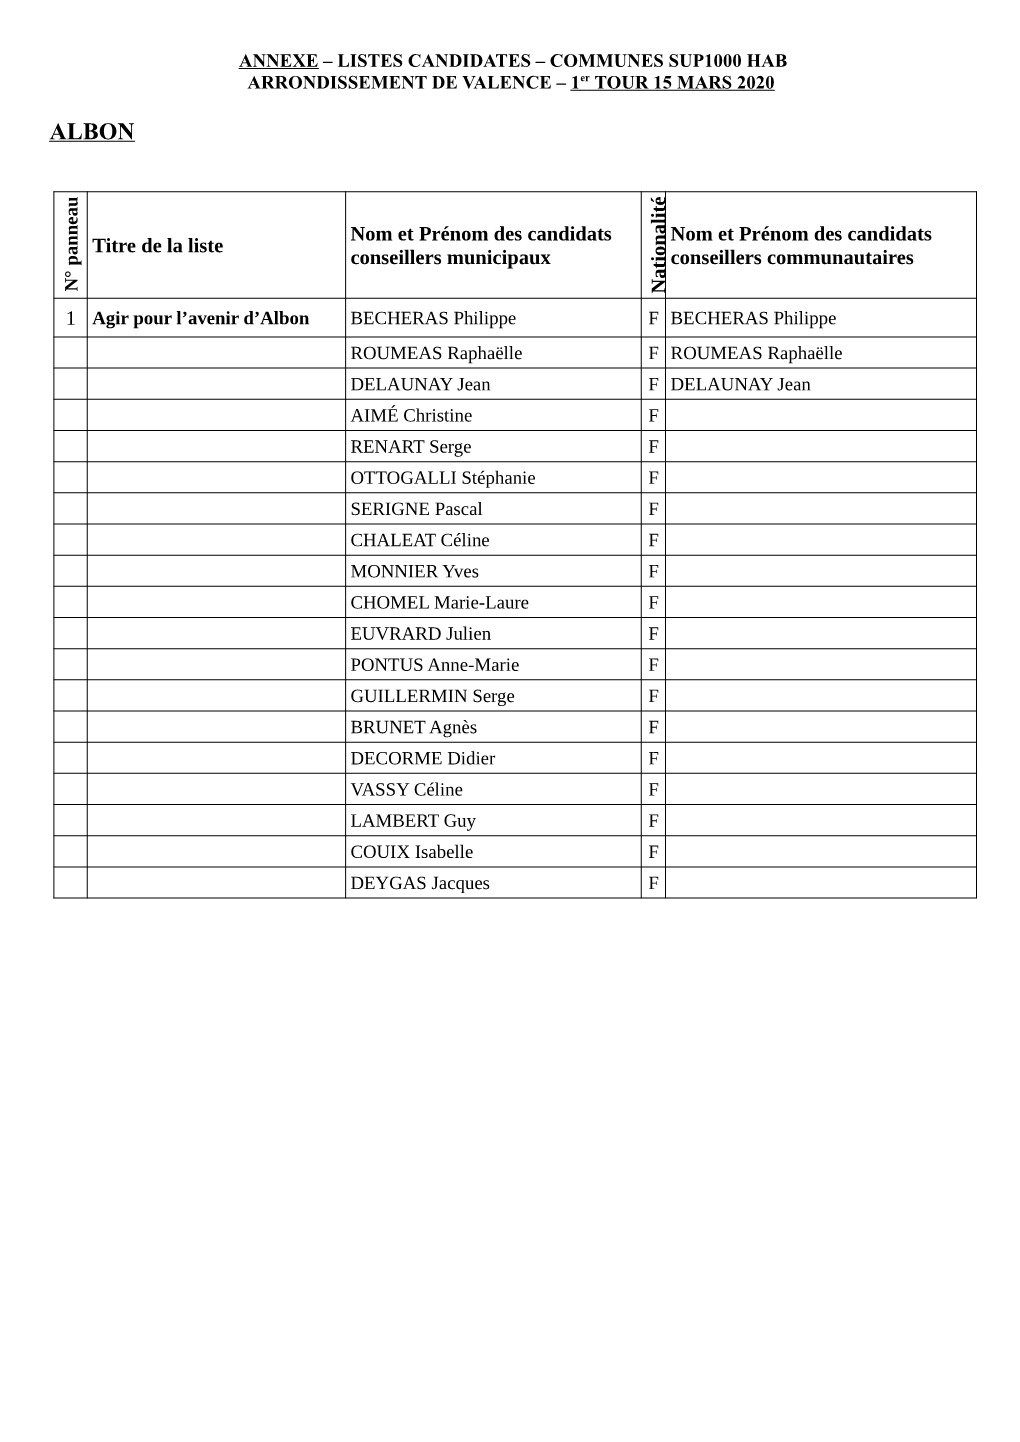 Annexe Listes Candidates Communes Sup1000 Hab Arr Valence